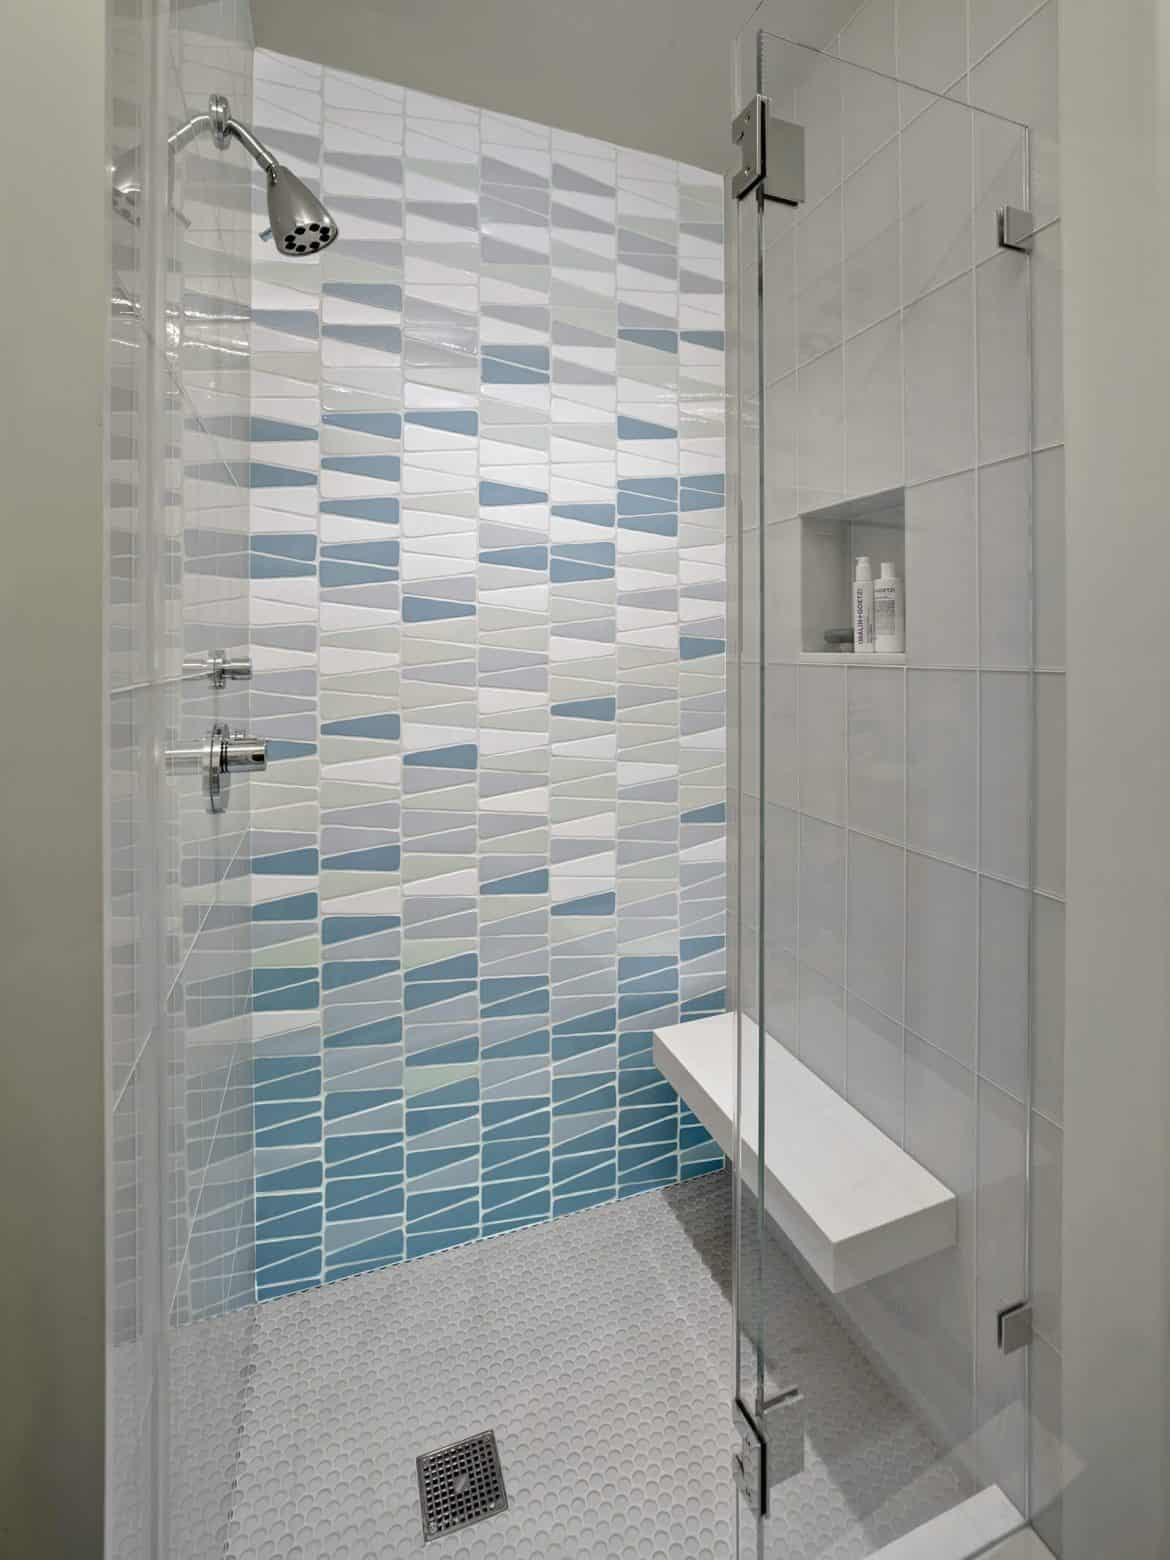 05 Shower Tile Ideas Decorsnob 1170x1560 